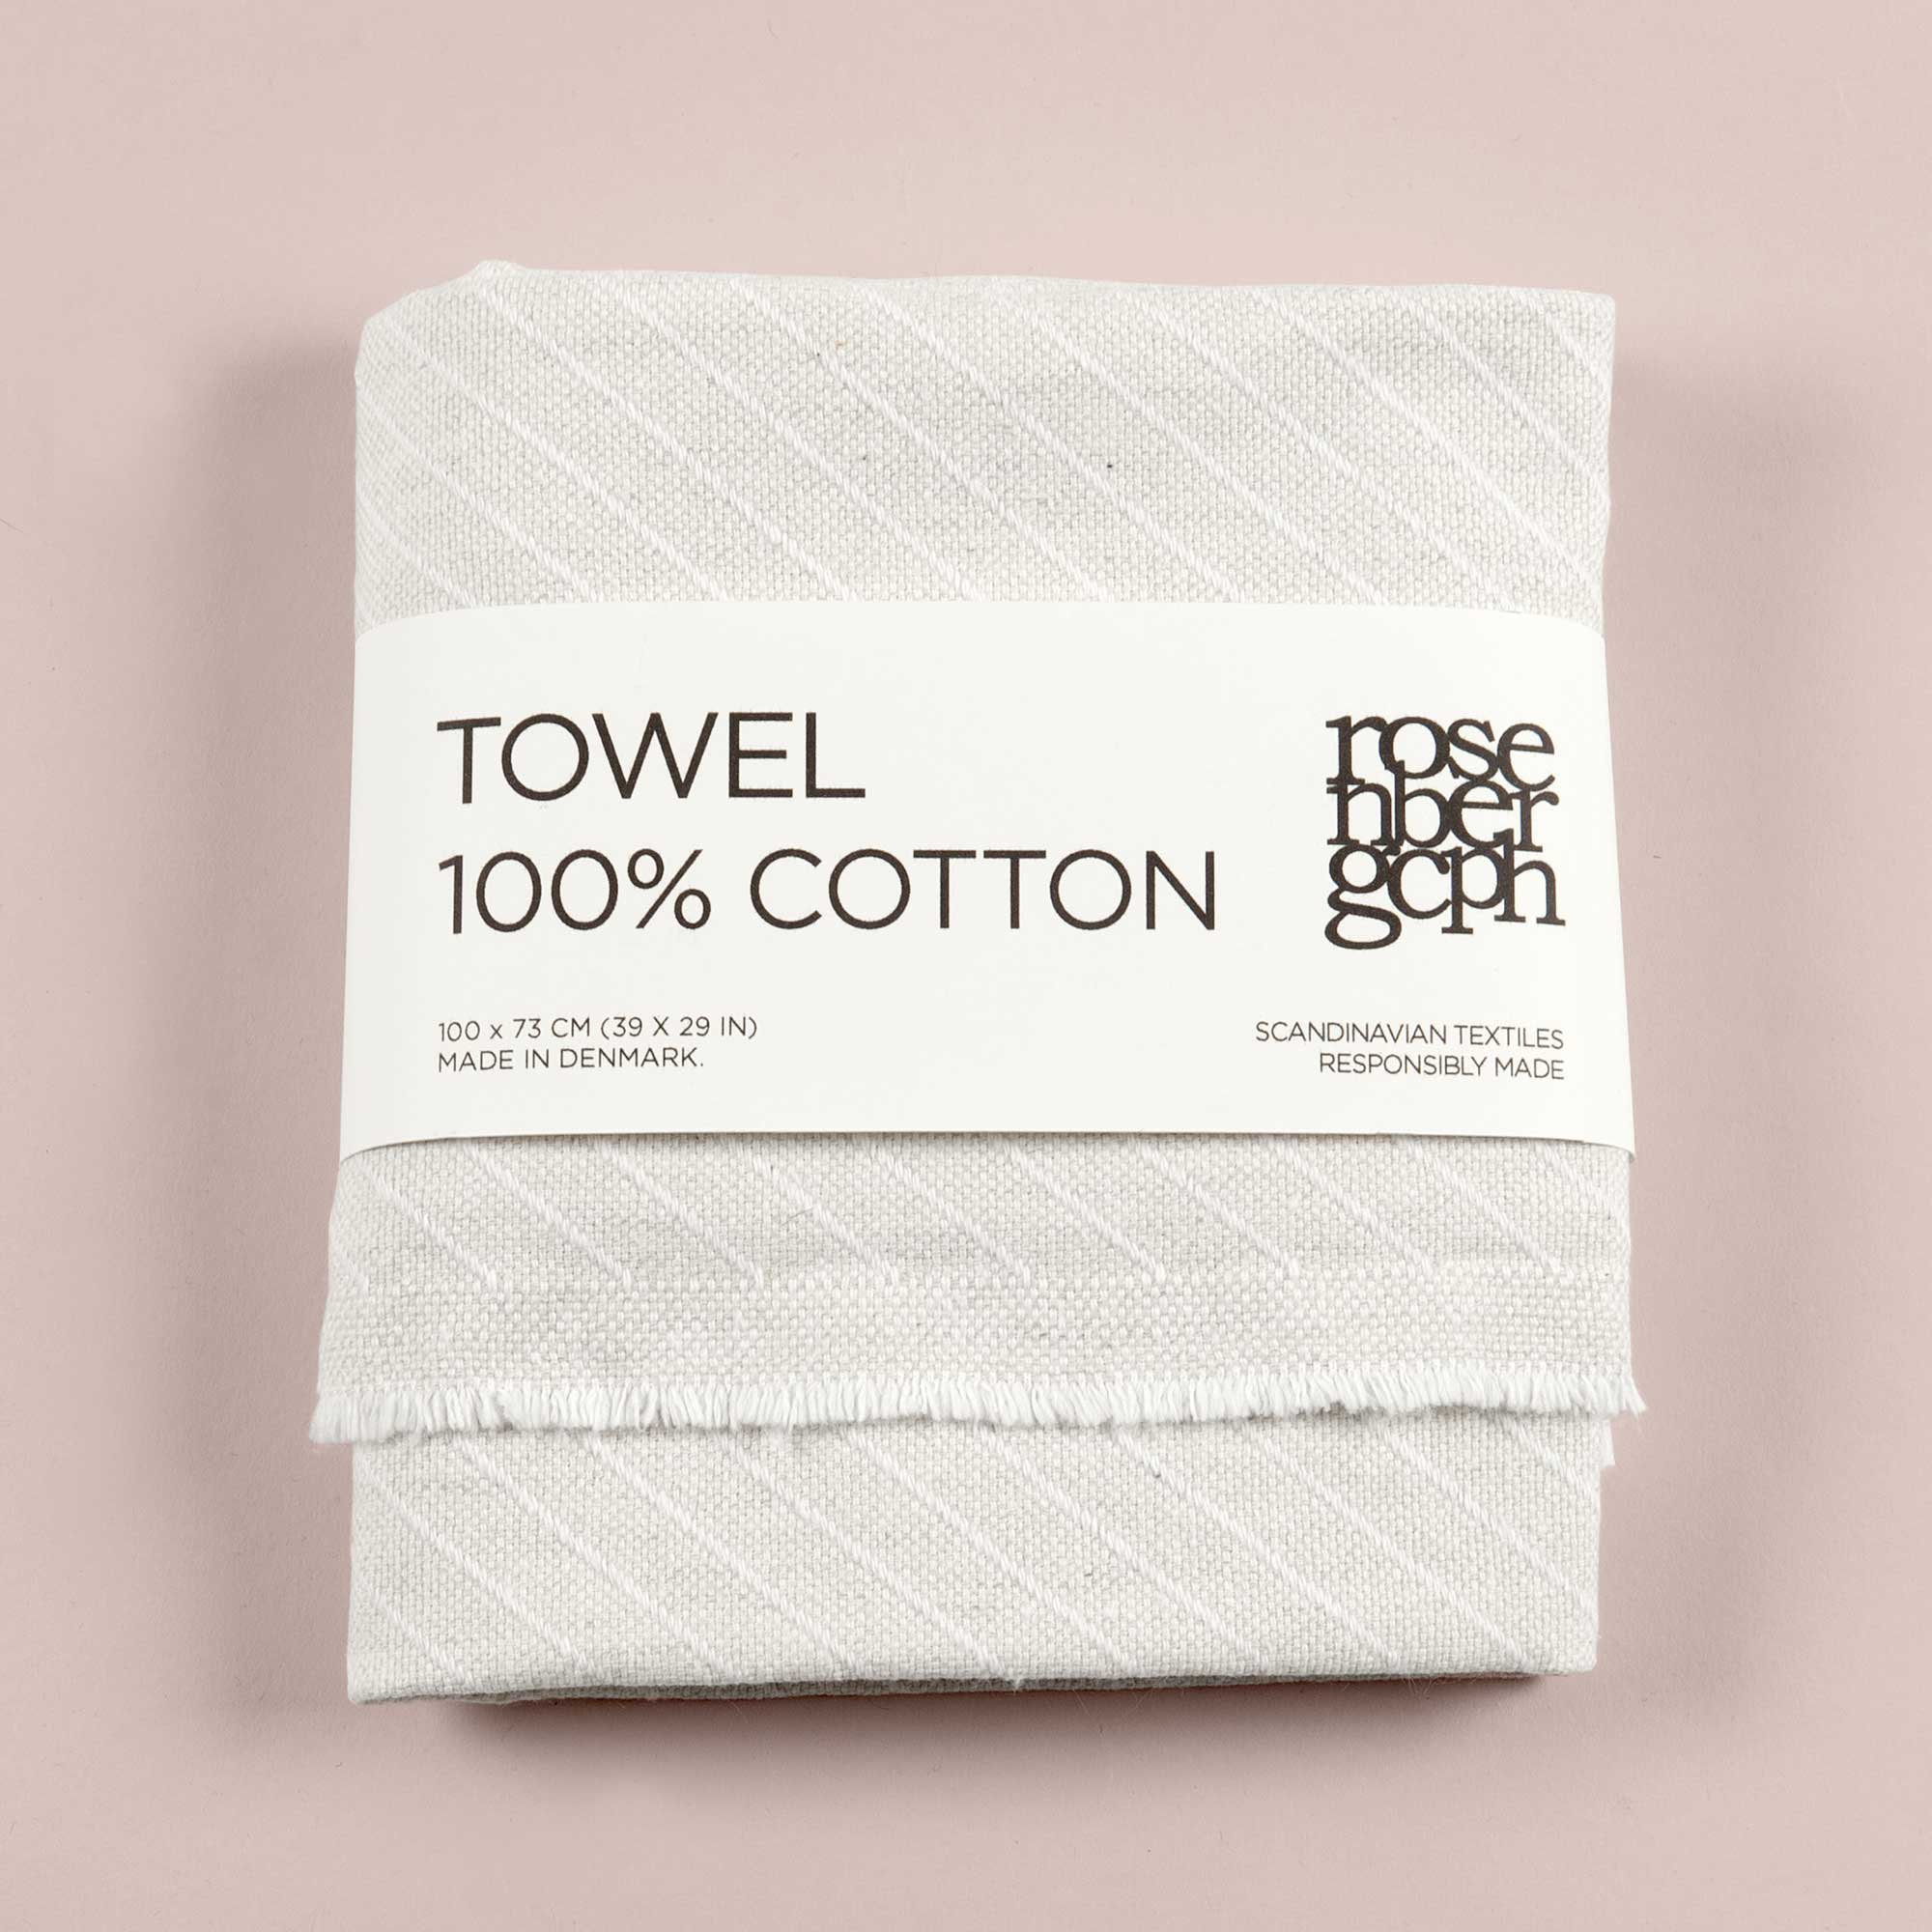 Towel, Stripes, 100% cotton, by RosenbergCph